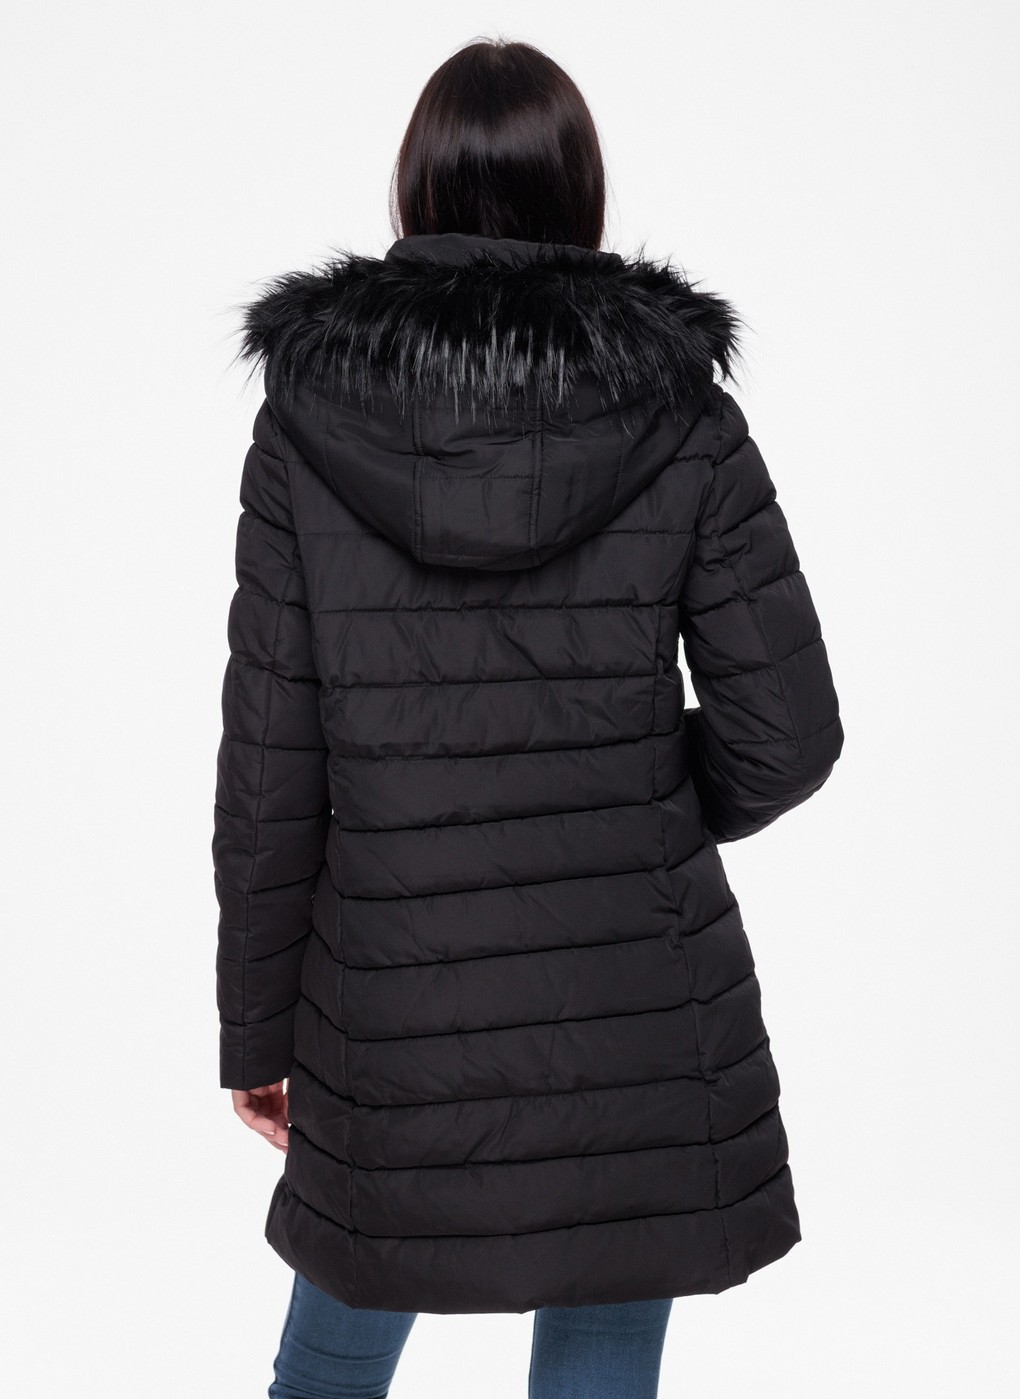 Куртка зимняя - женская куртка Tommy Hilfiger